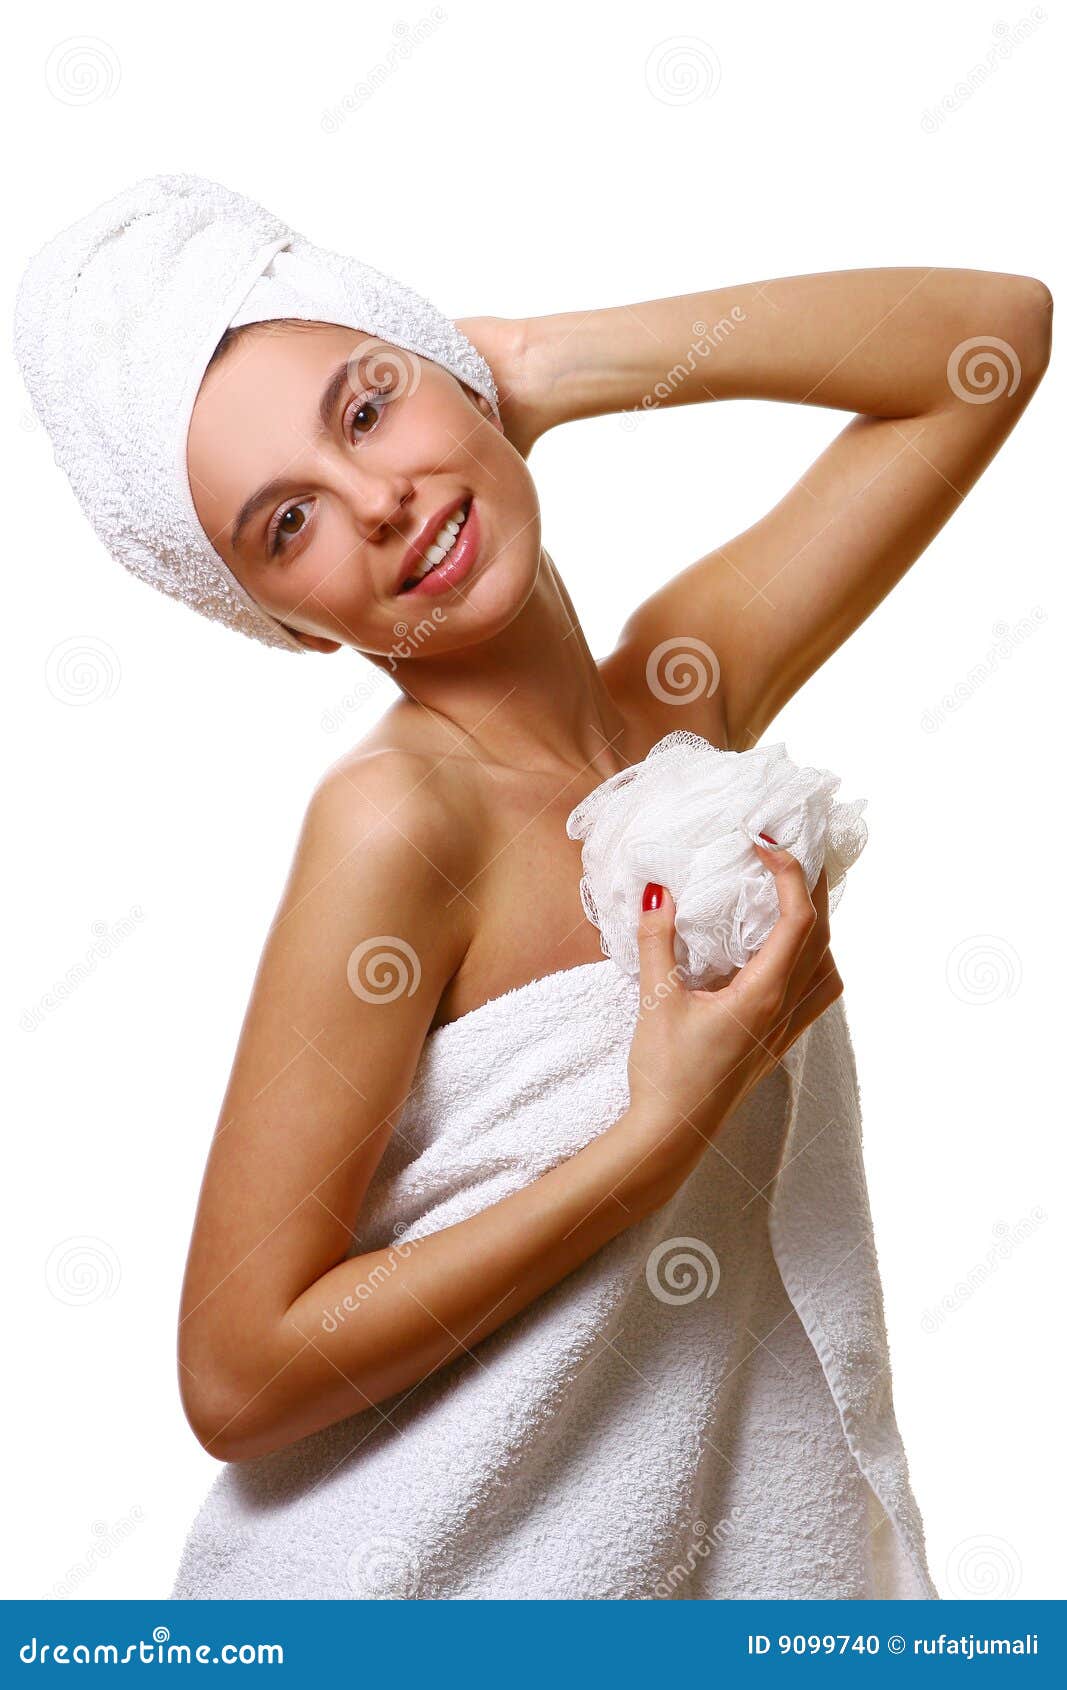 Работа в полотенце. Прикрылась полотенцем. Девушка в полотенце. Красивая девушка в полотенце. Женщины завёрнутые в полотенце.